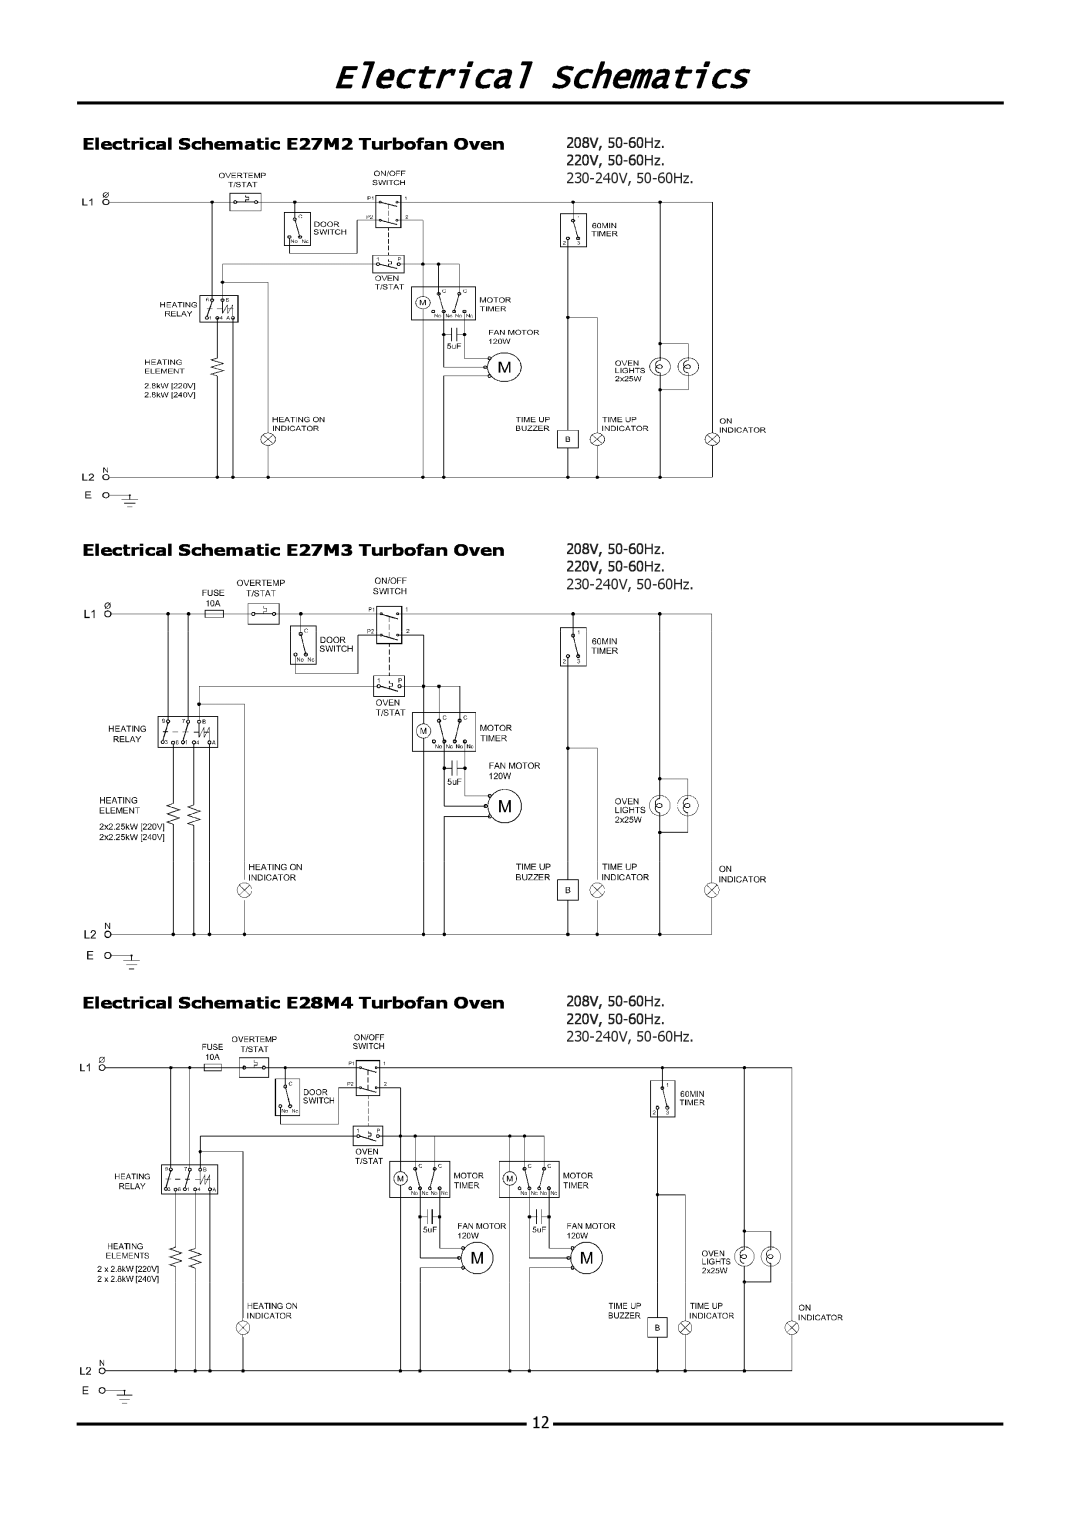 Moffat E20M operation manual Electrical Schematics, 208V, 50-60Hz, 220V, 50-60Hz, 230-240V, 50-60Hz 